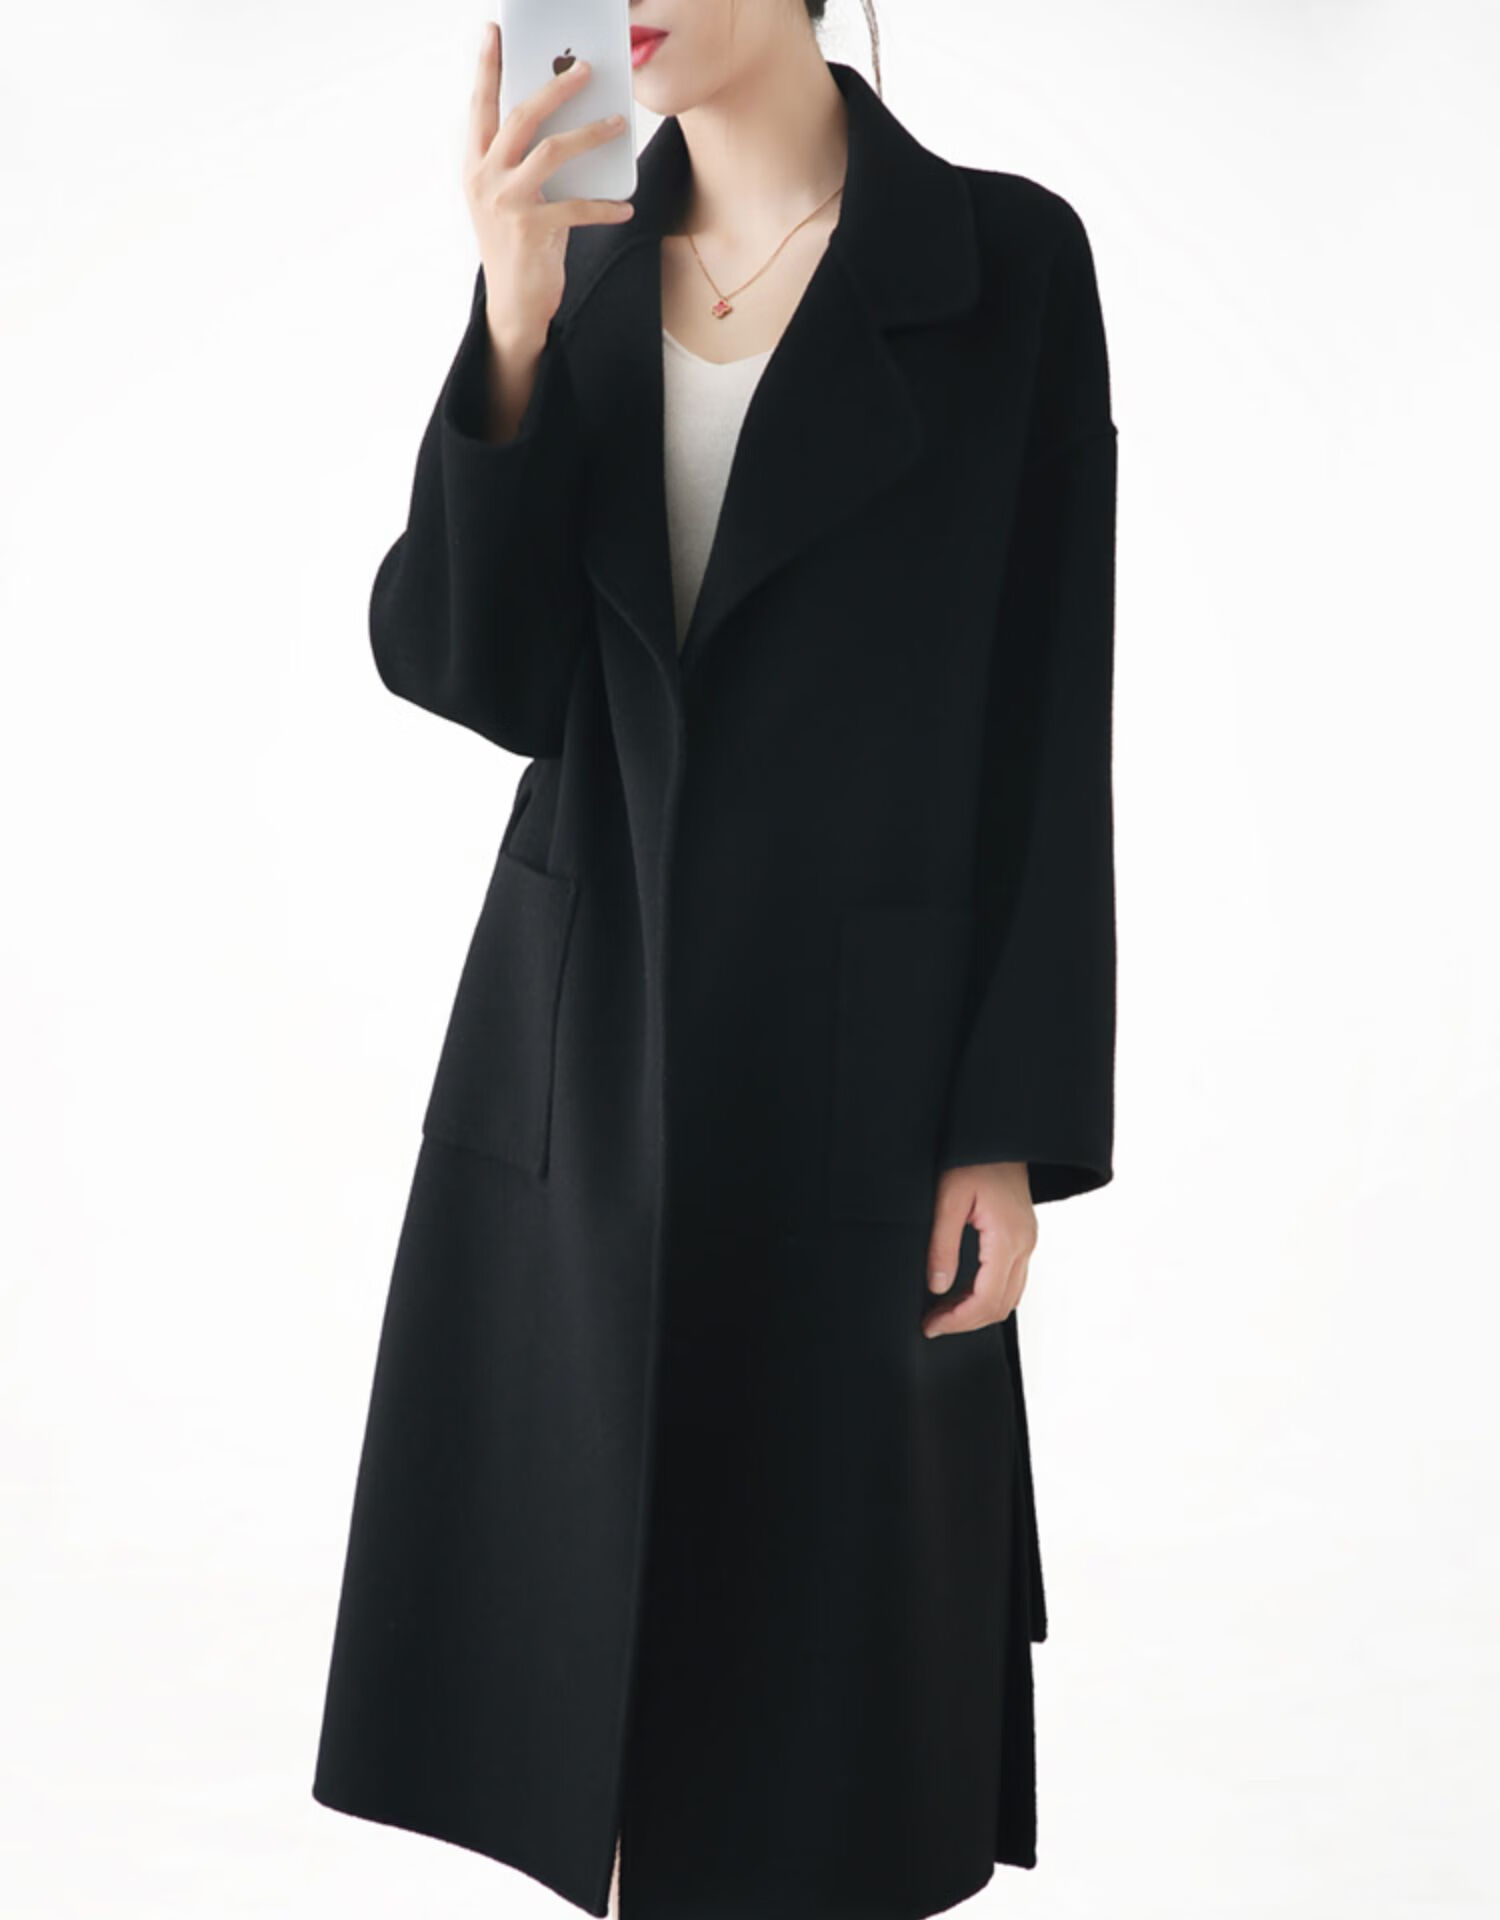 ghek 设计师品牌女装双面羊毛大衣女秋冬羊毛呢子外套2020新款中长款